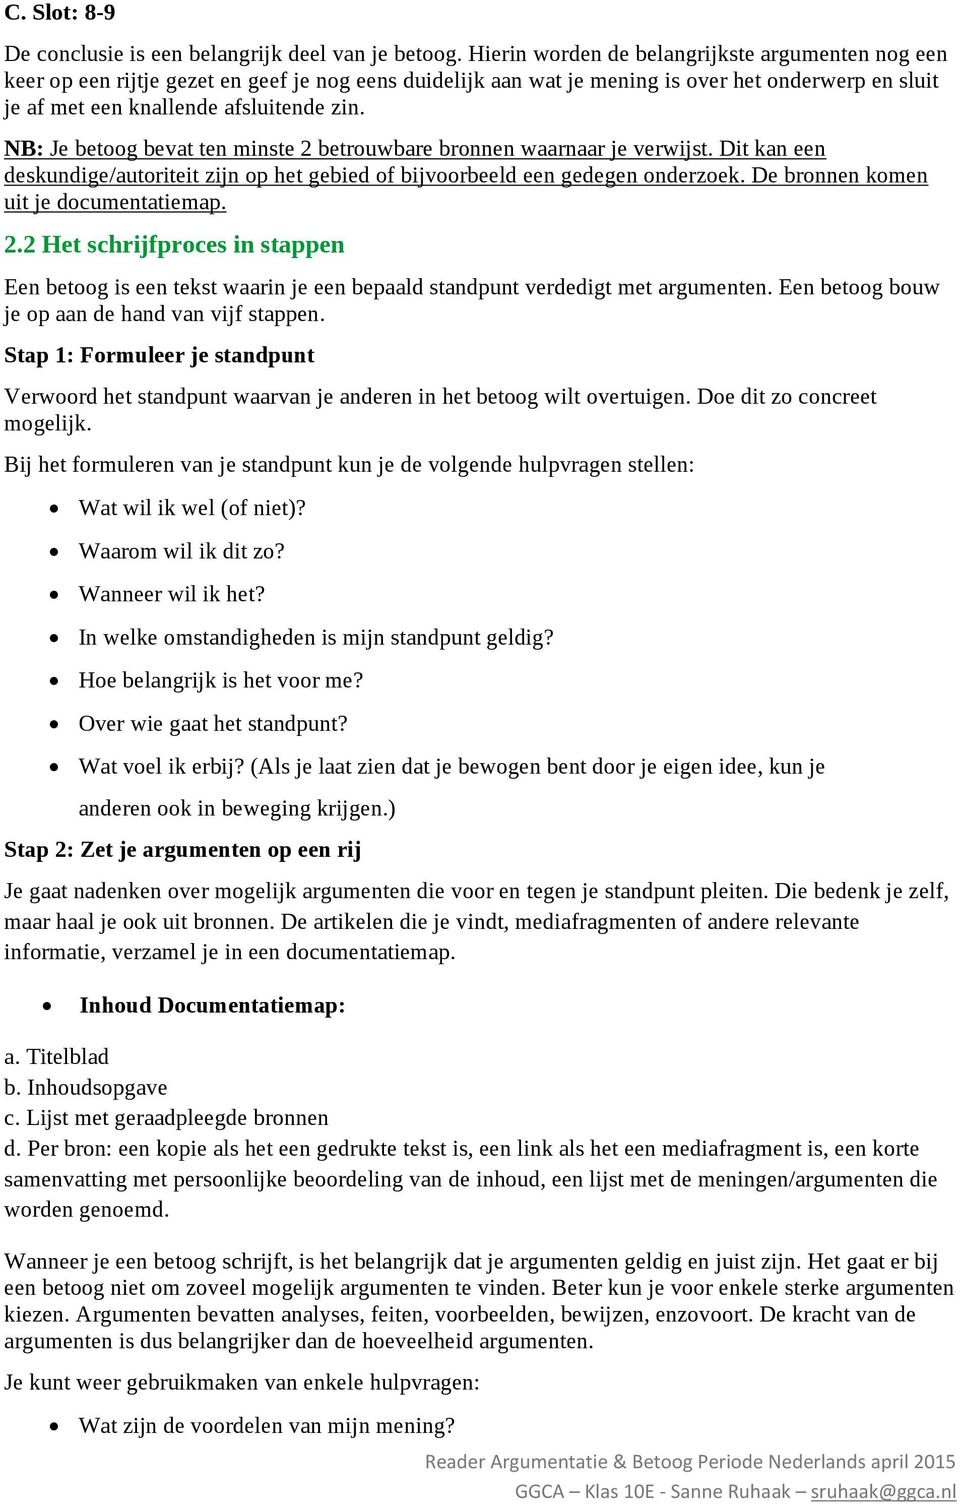 Reader Argumentatie Betoog Theorie En Opdrachten Periode Nederlands 10 Vwo Geert Groote College Amsterdam Mei 2015 Sanne Ruhaak Pdf Gratis Download